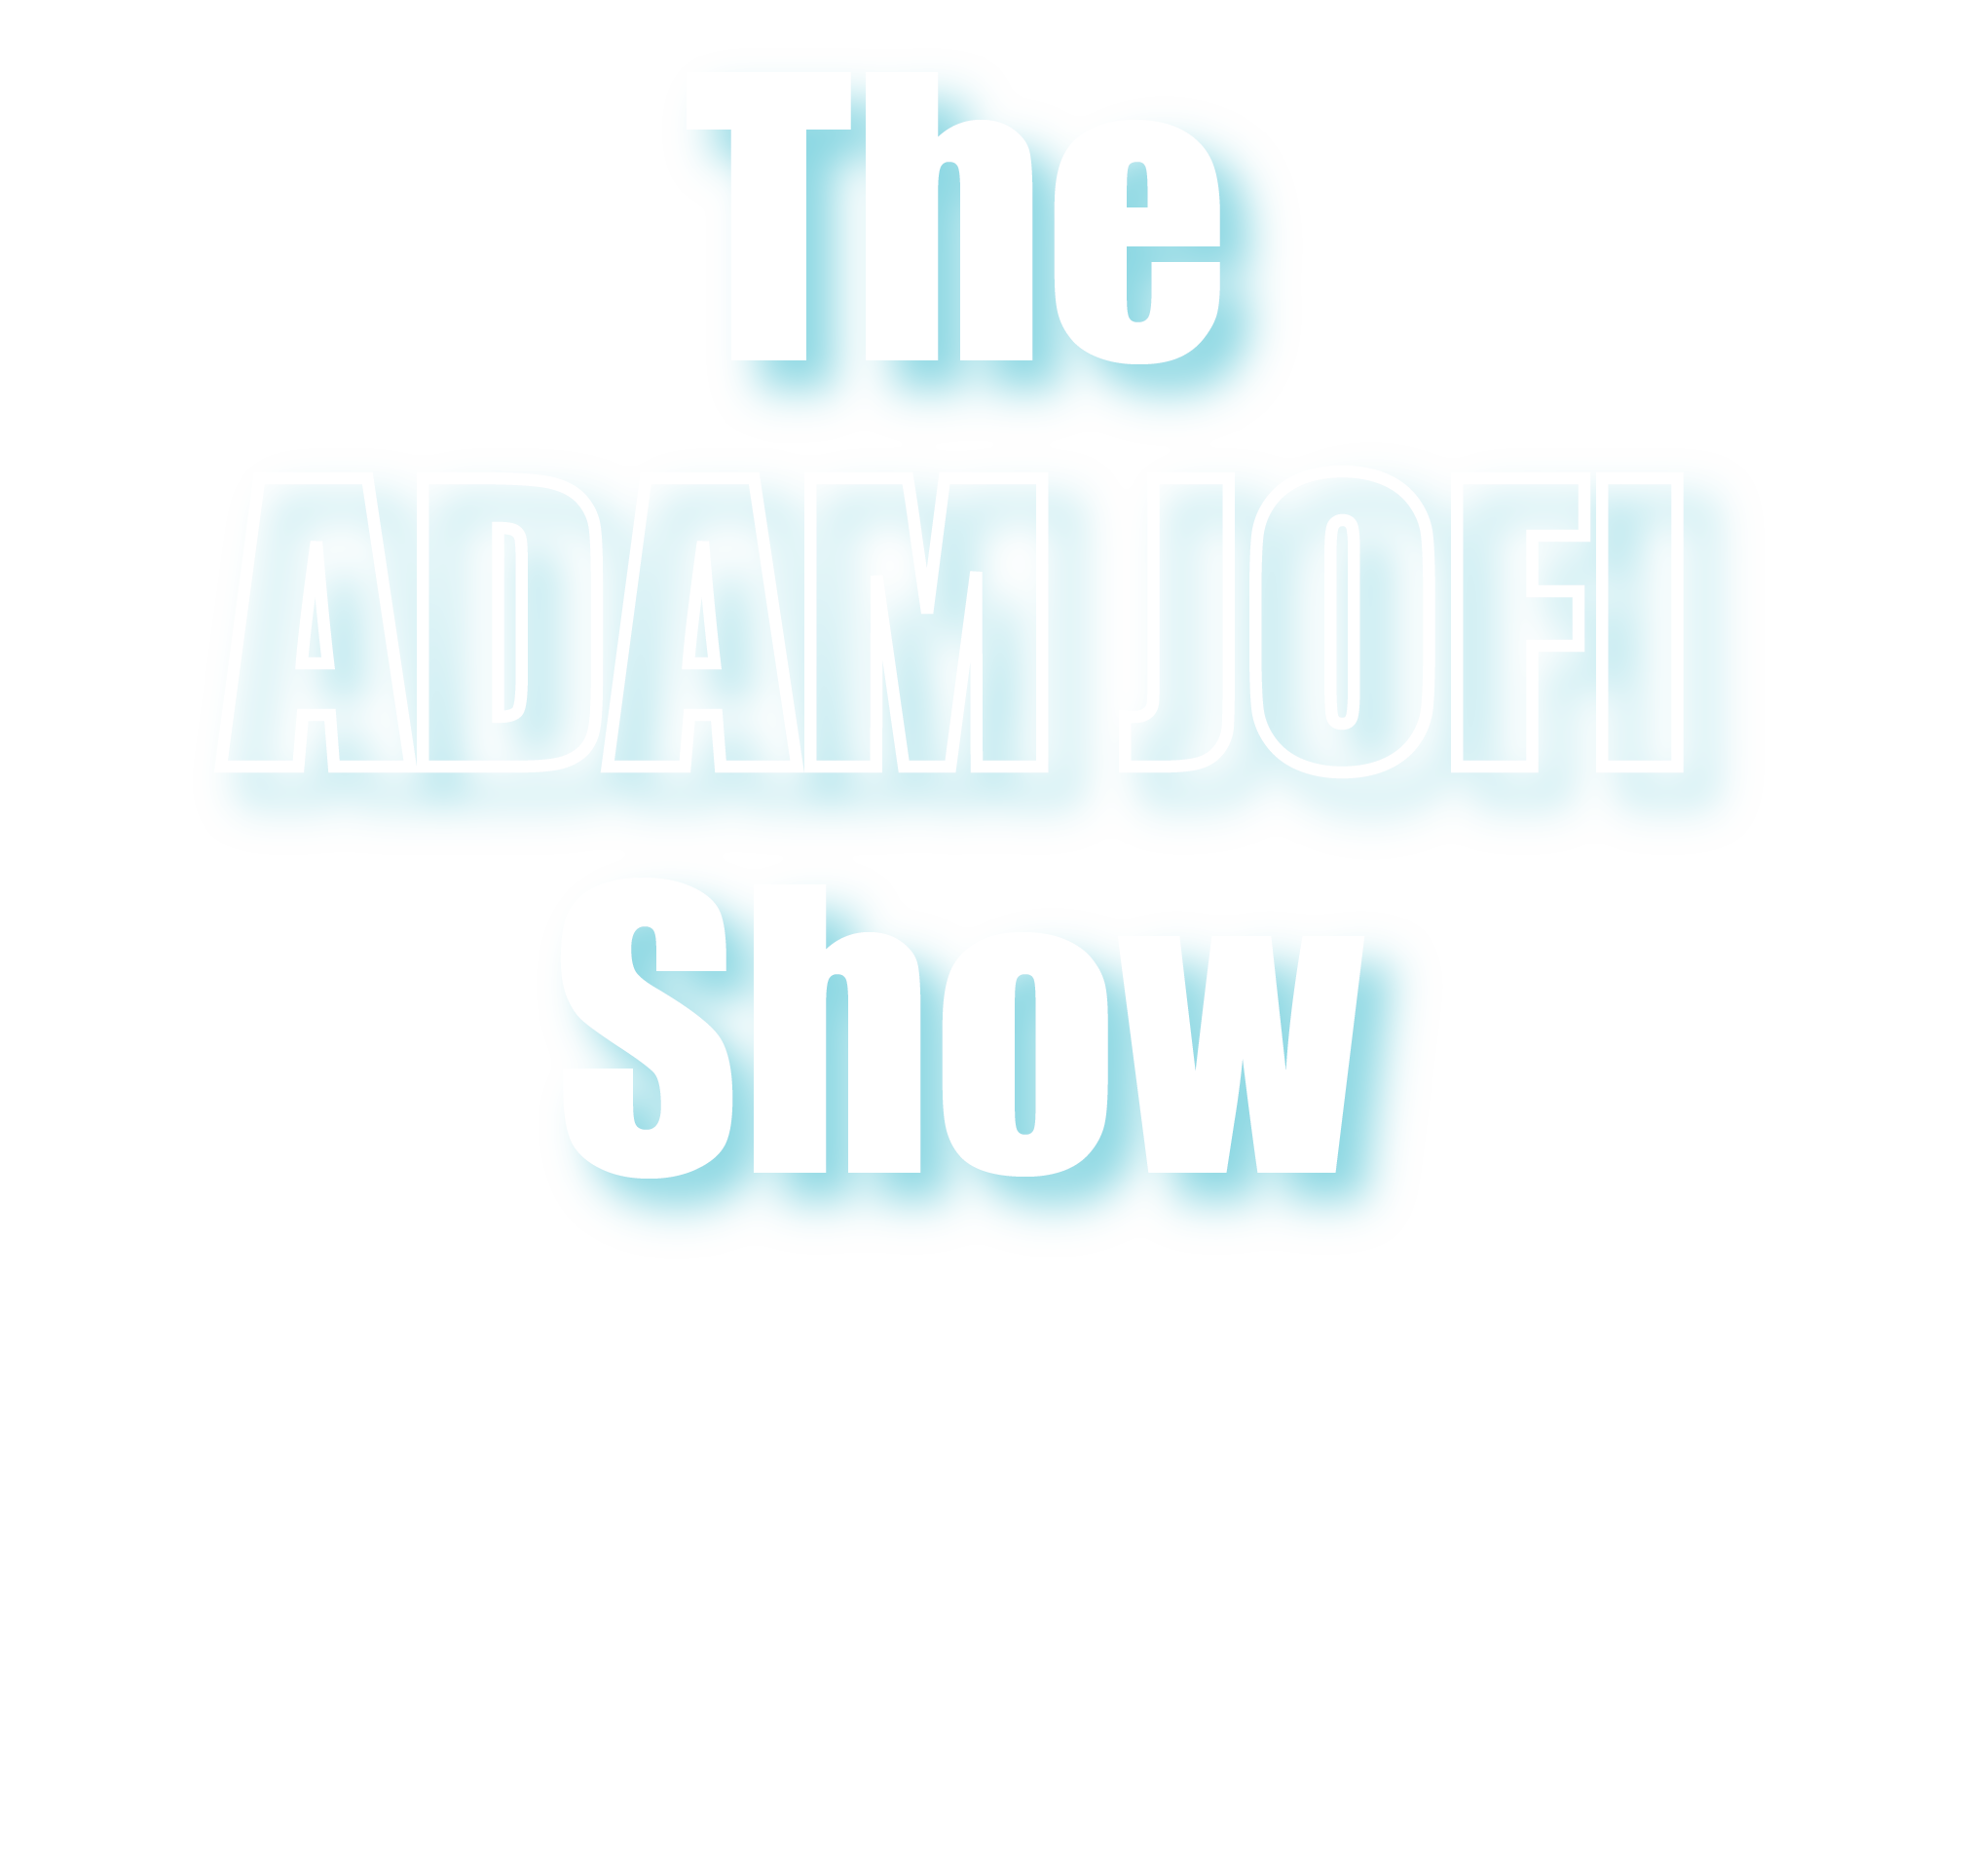 Adam jofi logo